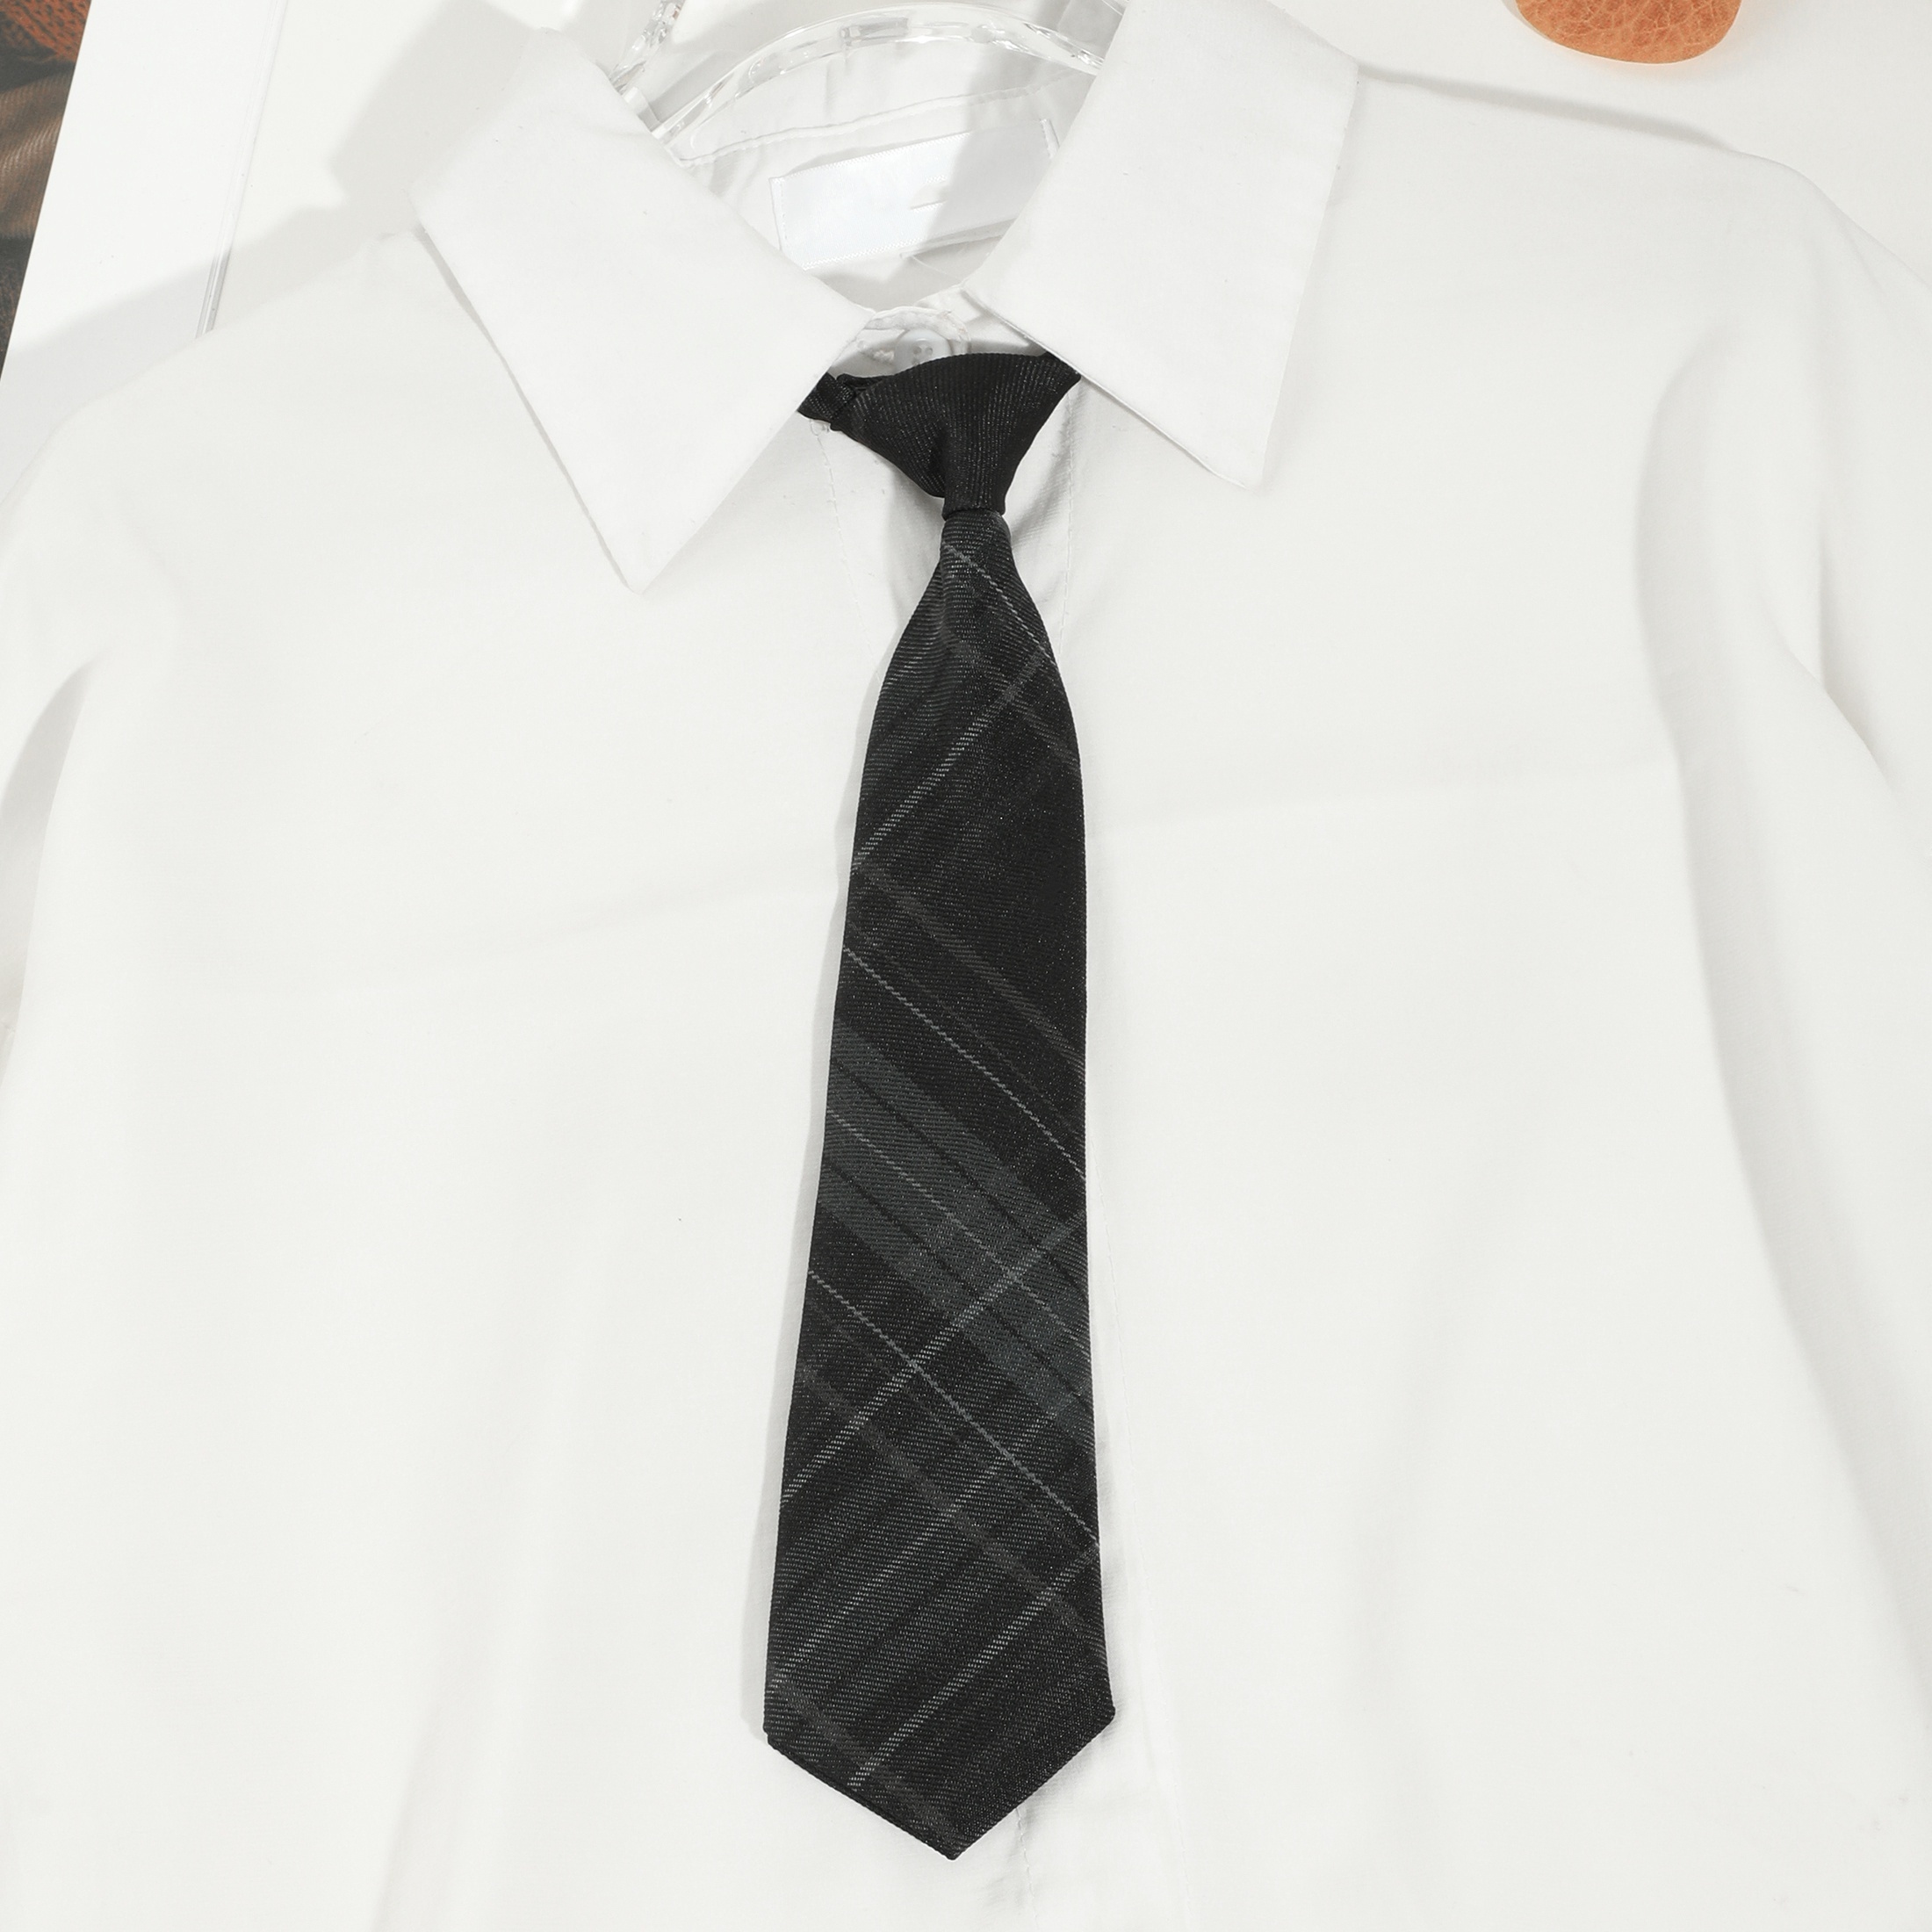 Corbata negra - Uniformes La Terminal Tienda Online